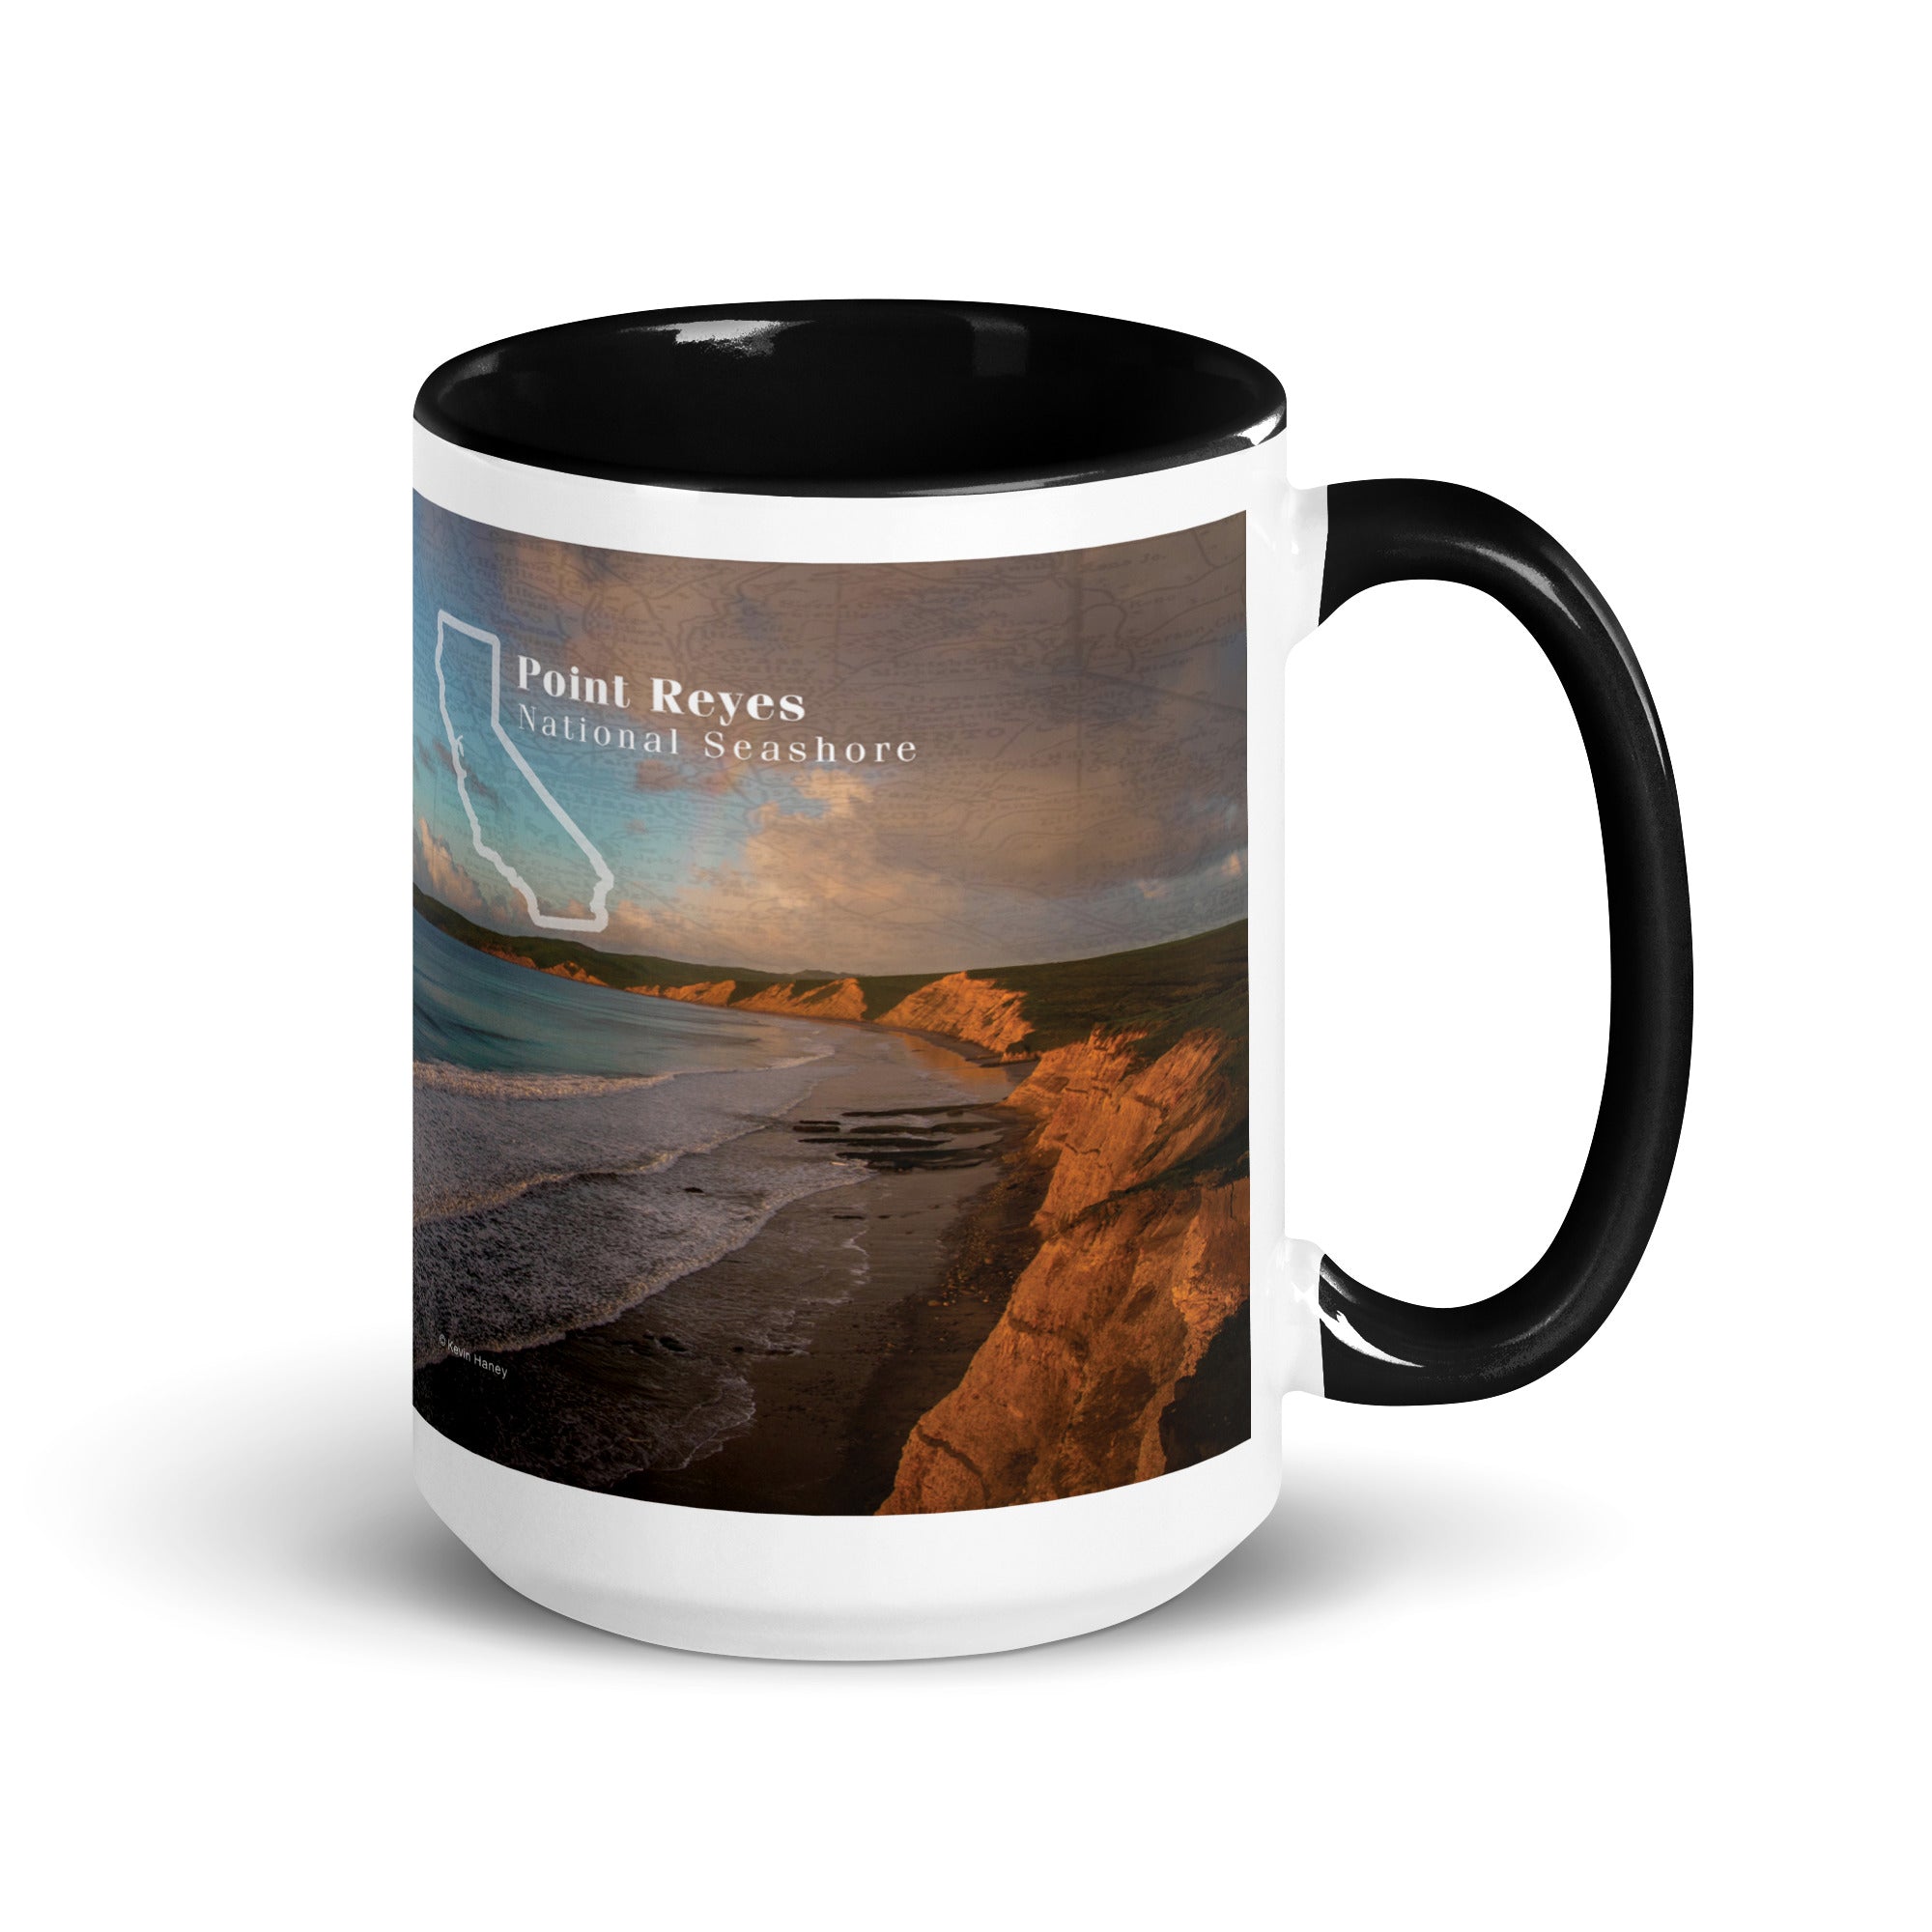 Point Reyes National Seashore Mug with Black Inside